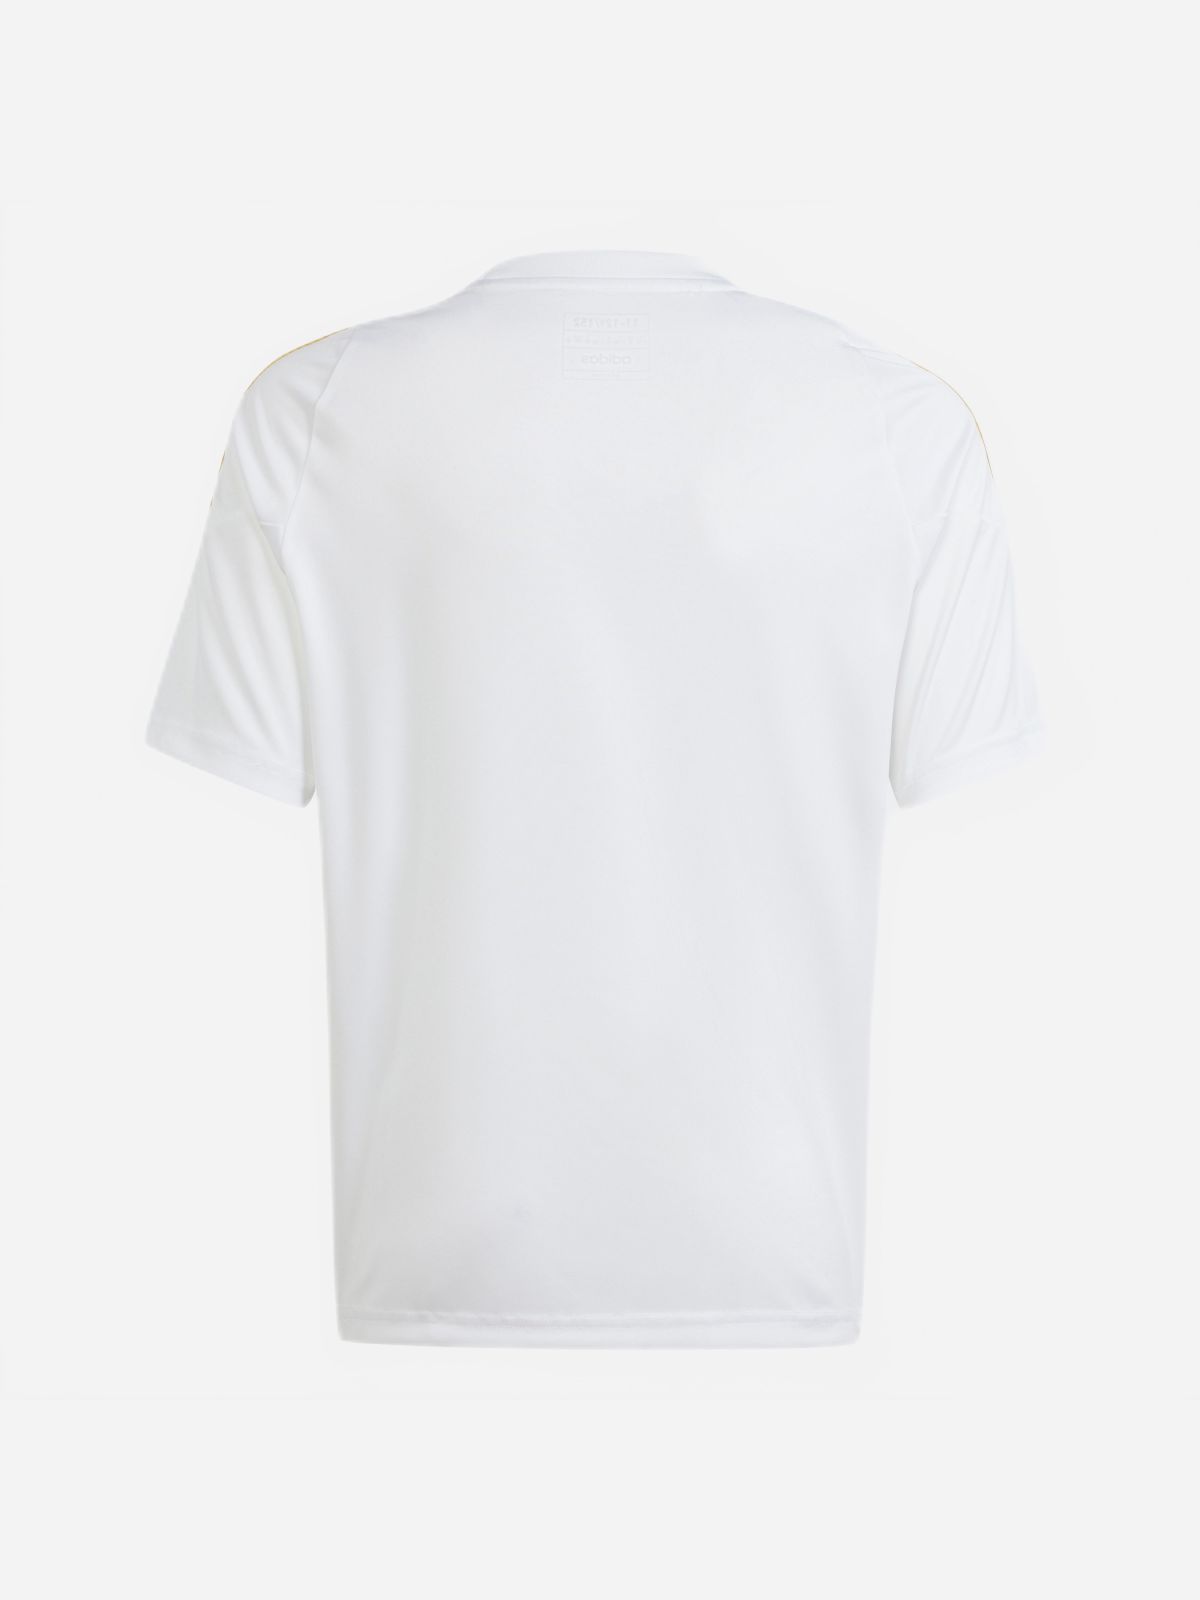  חולצת כדורגל בהדפס פסים / בנים של ADIDAS Performance